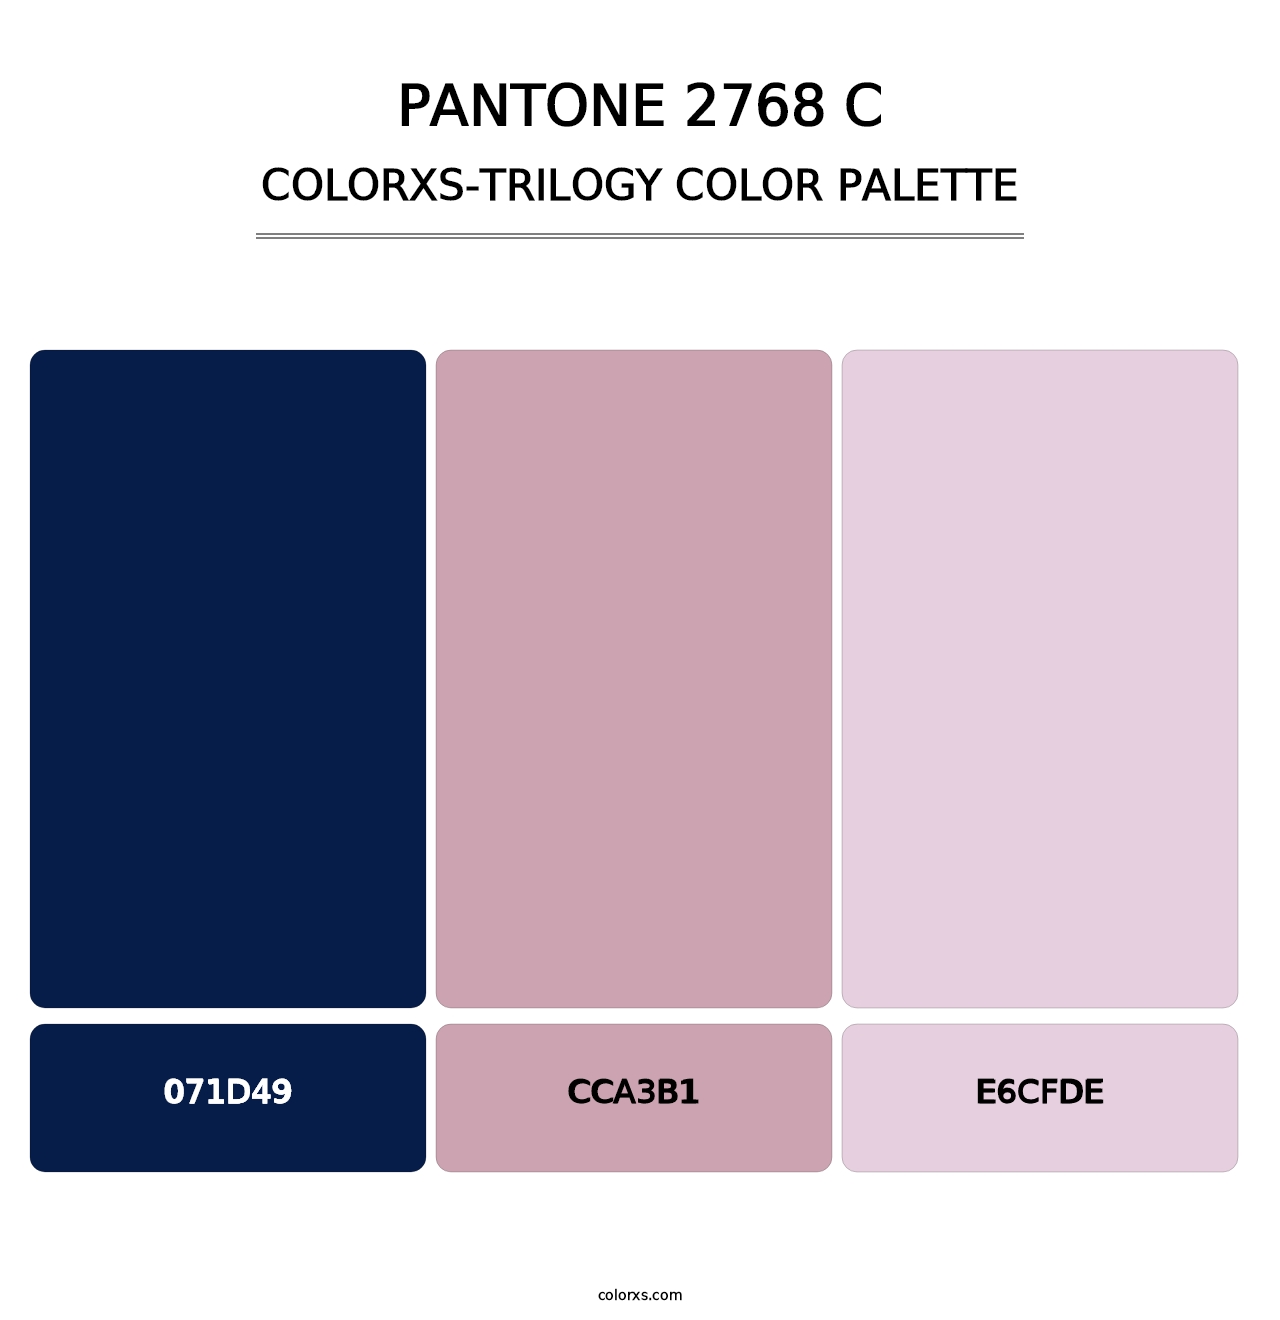 PANTONE 2768 C - Colorxs Trilogy Palette